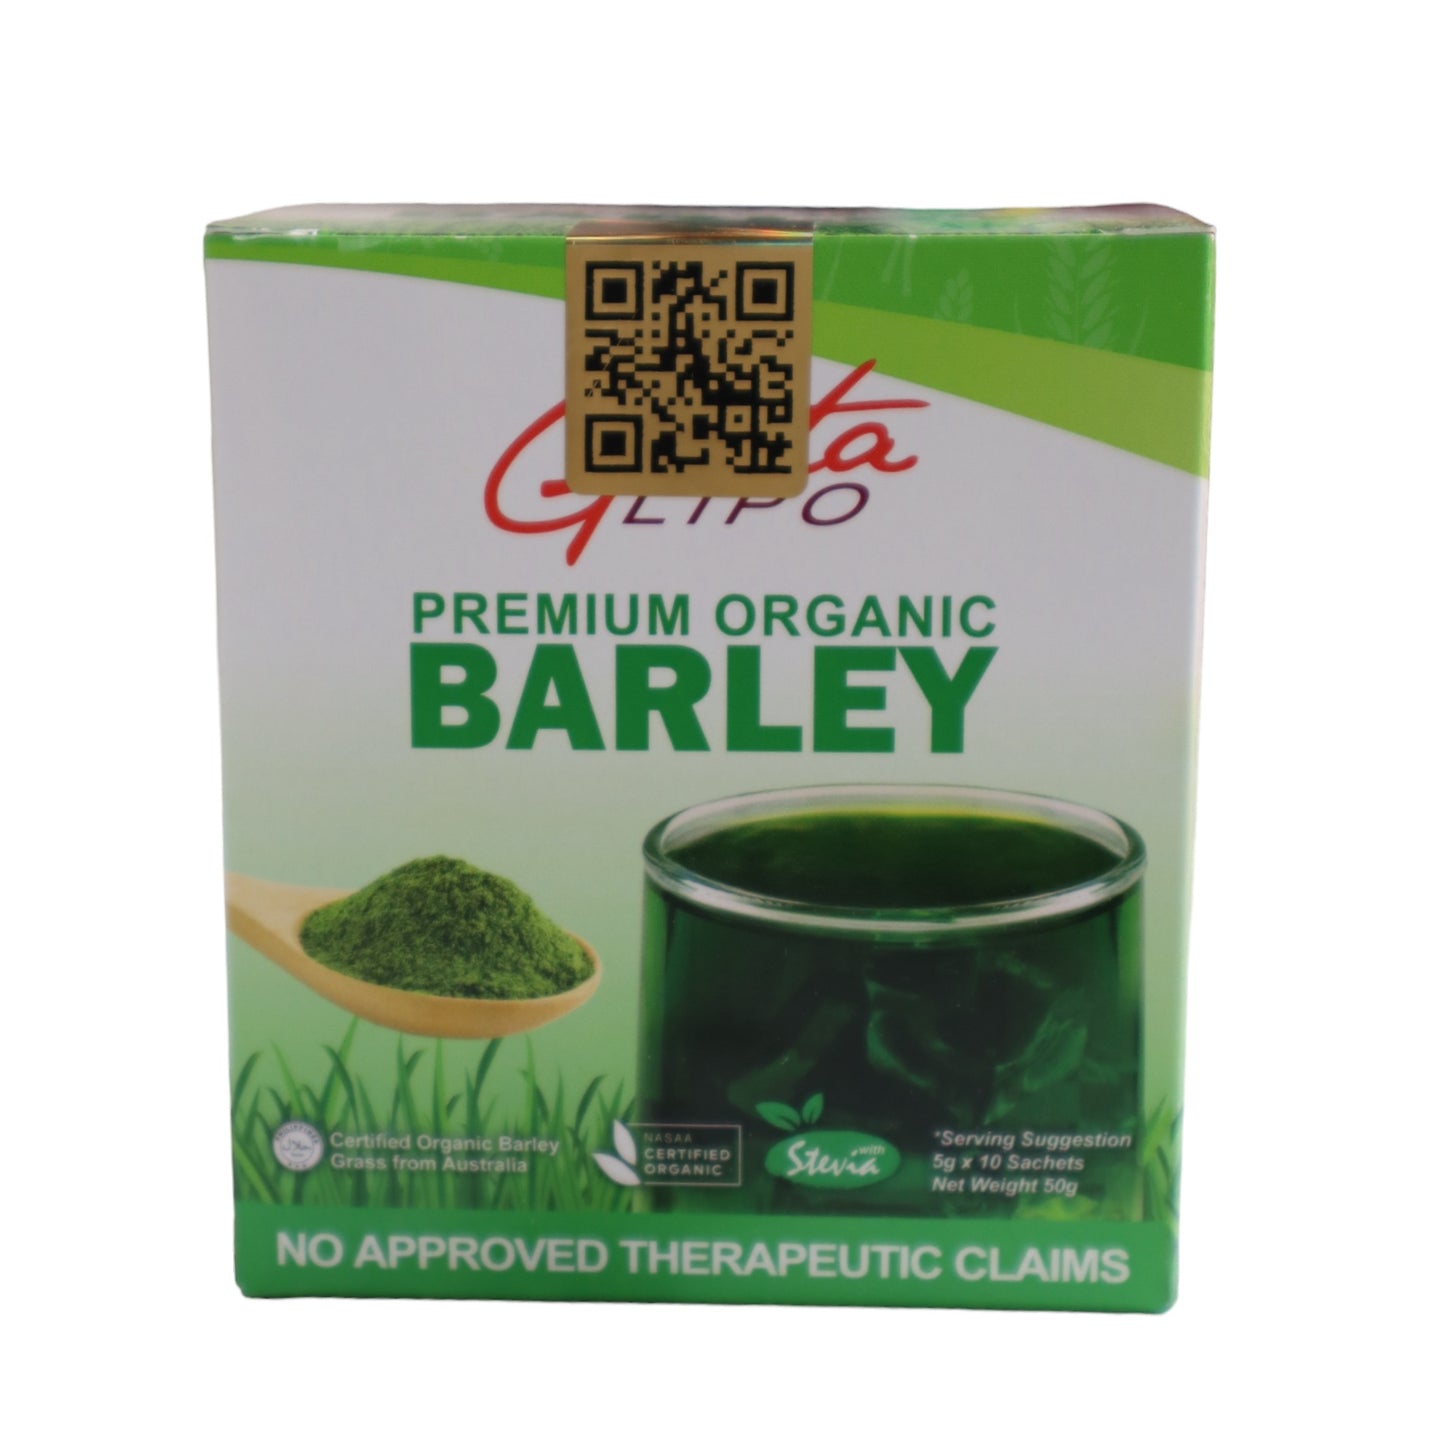 Gluta Lipo Premium Organic Barley 10 sachets x 18g